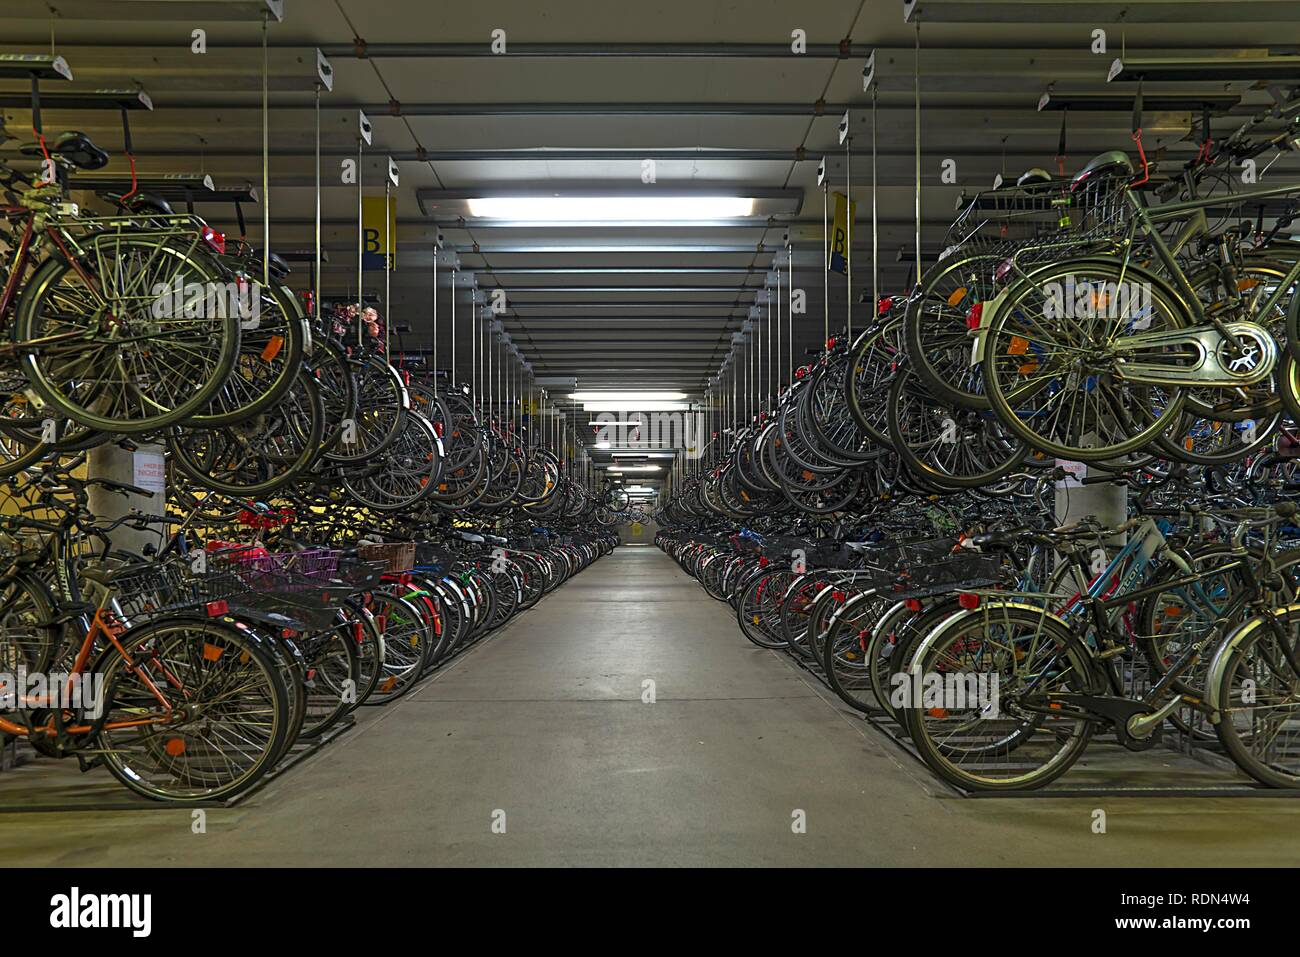 Bicycle parking garage, Münster, North Rhine-Westphalia, Germany Stock Photo